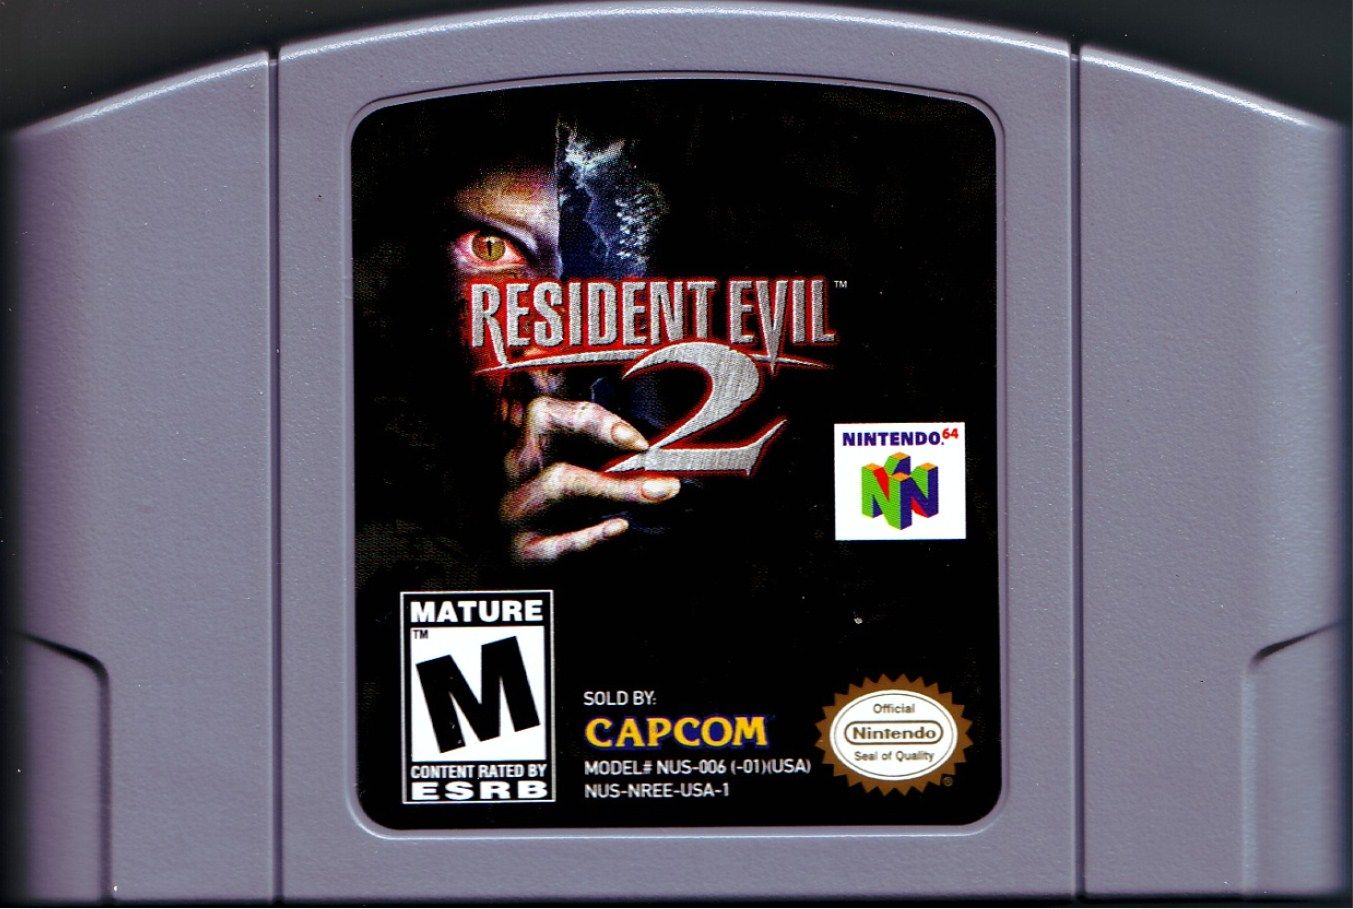 Resident evil 2 nintendo. Resident Evil 2 Nintendo 64. Resident Evil 2 Nintendo 64 картридж.